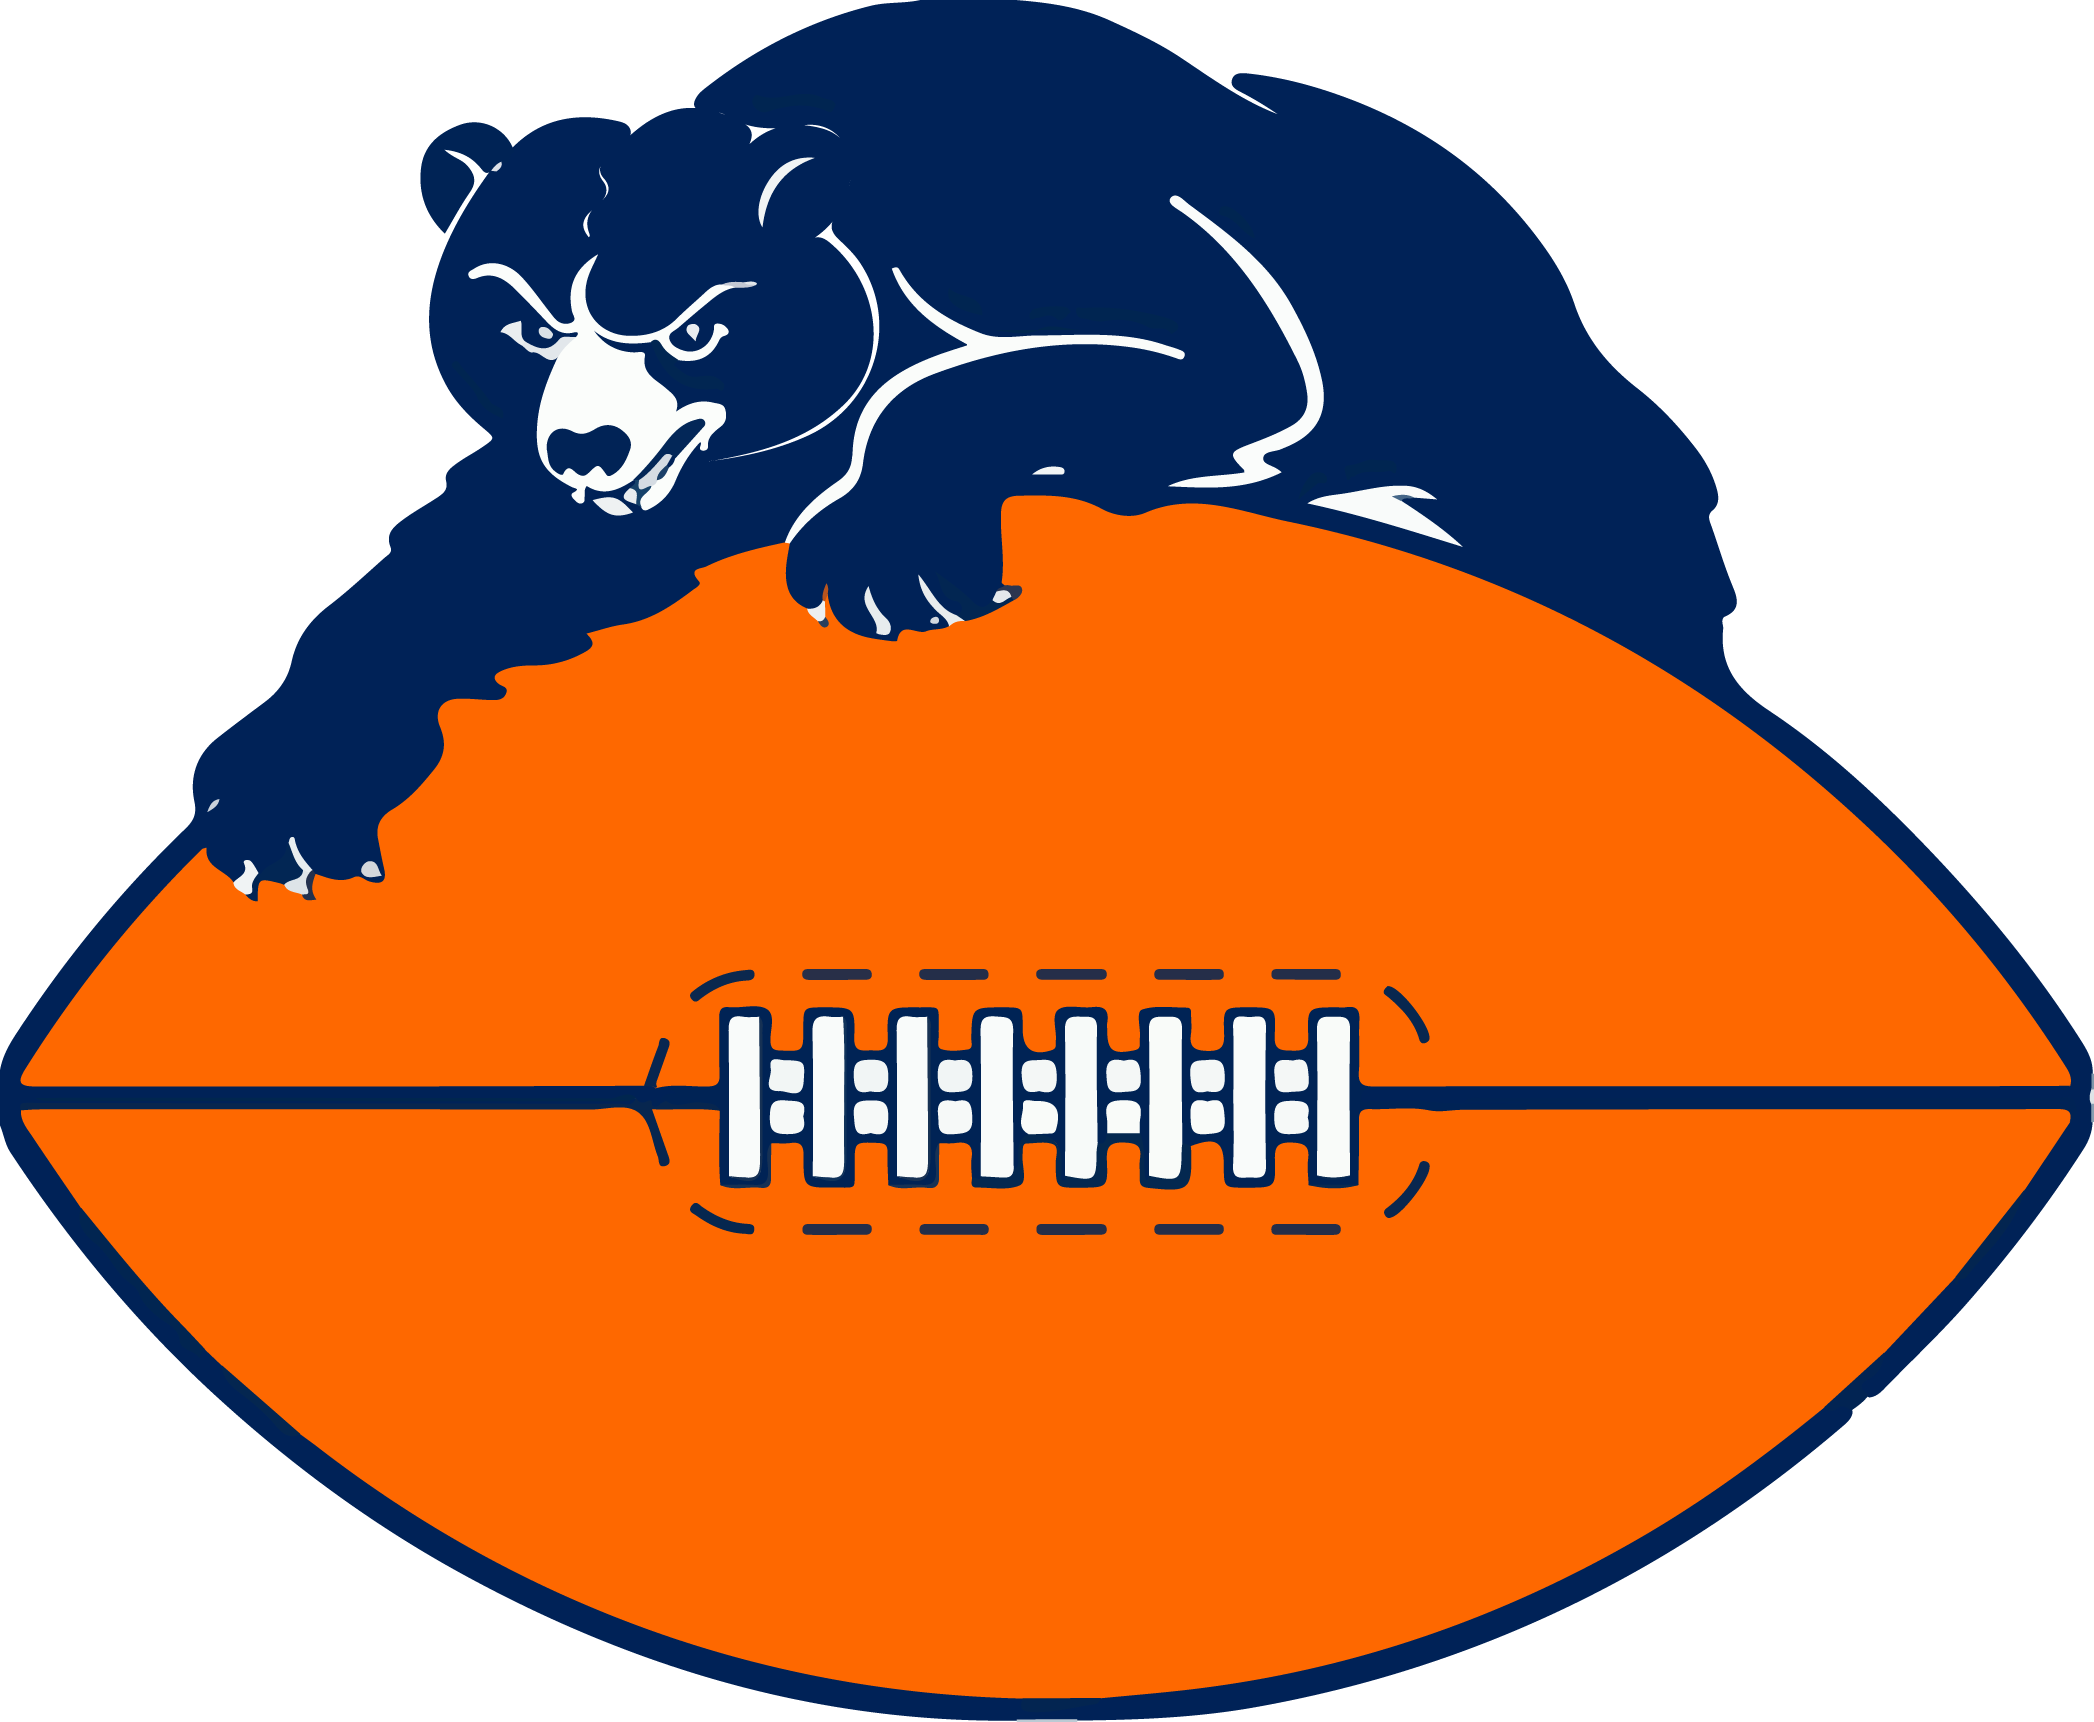 1946 - - Original Chicago Bears Logo (2094x1722)